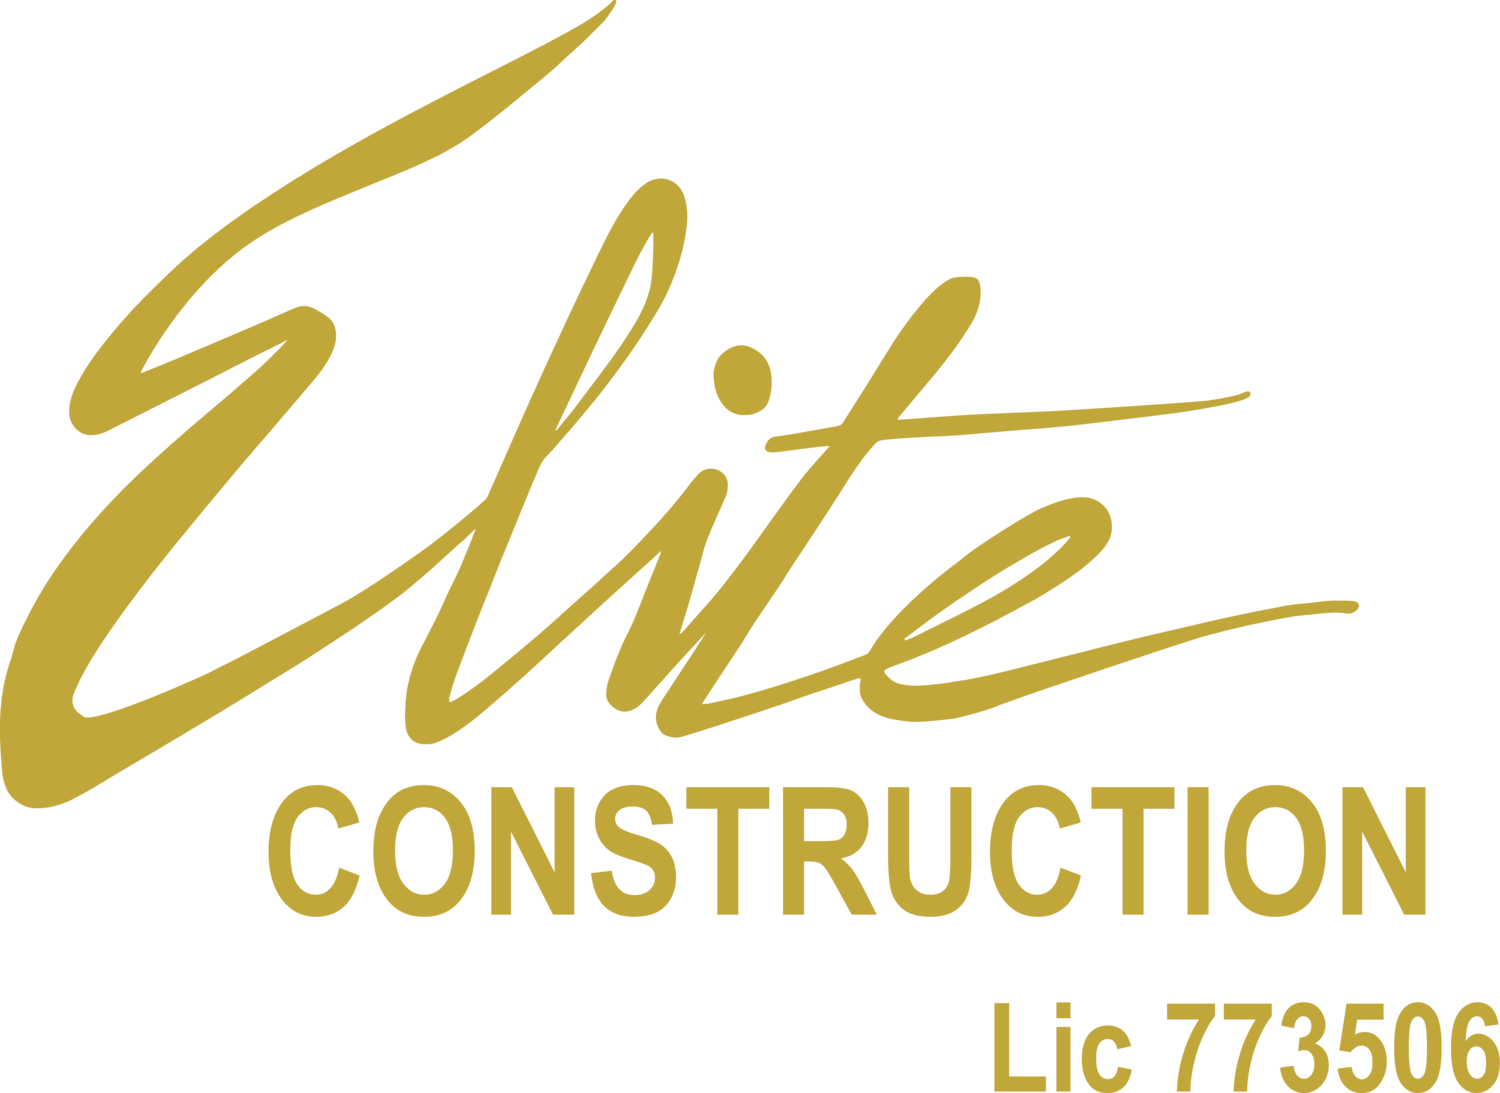 Elite Construction Services